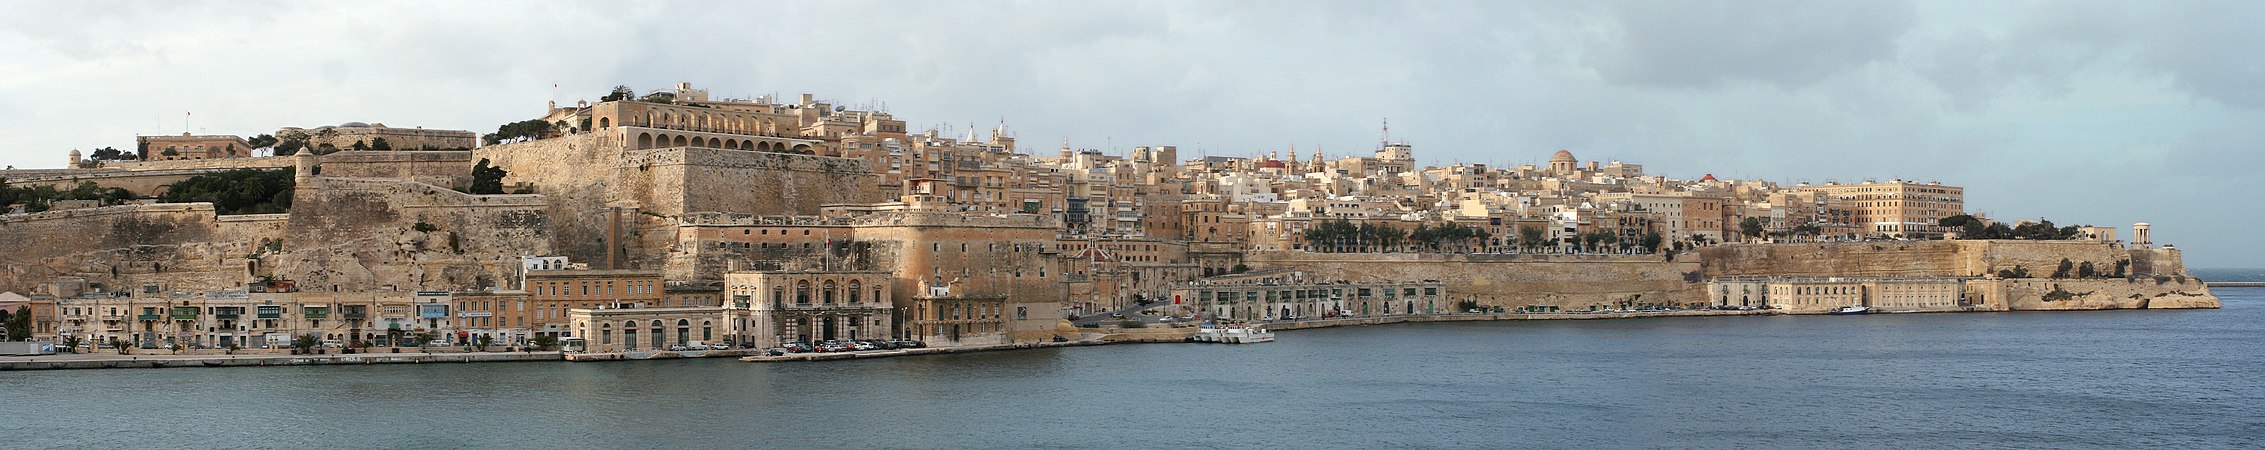 Valletta, by Myriam Thyes (edited by Adam Cuerden)